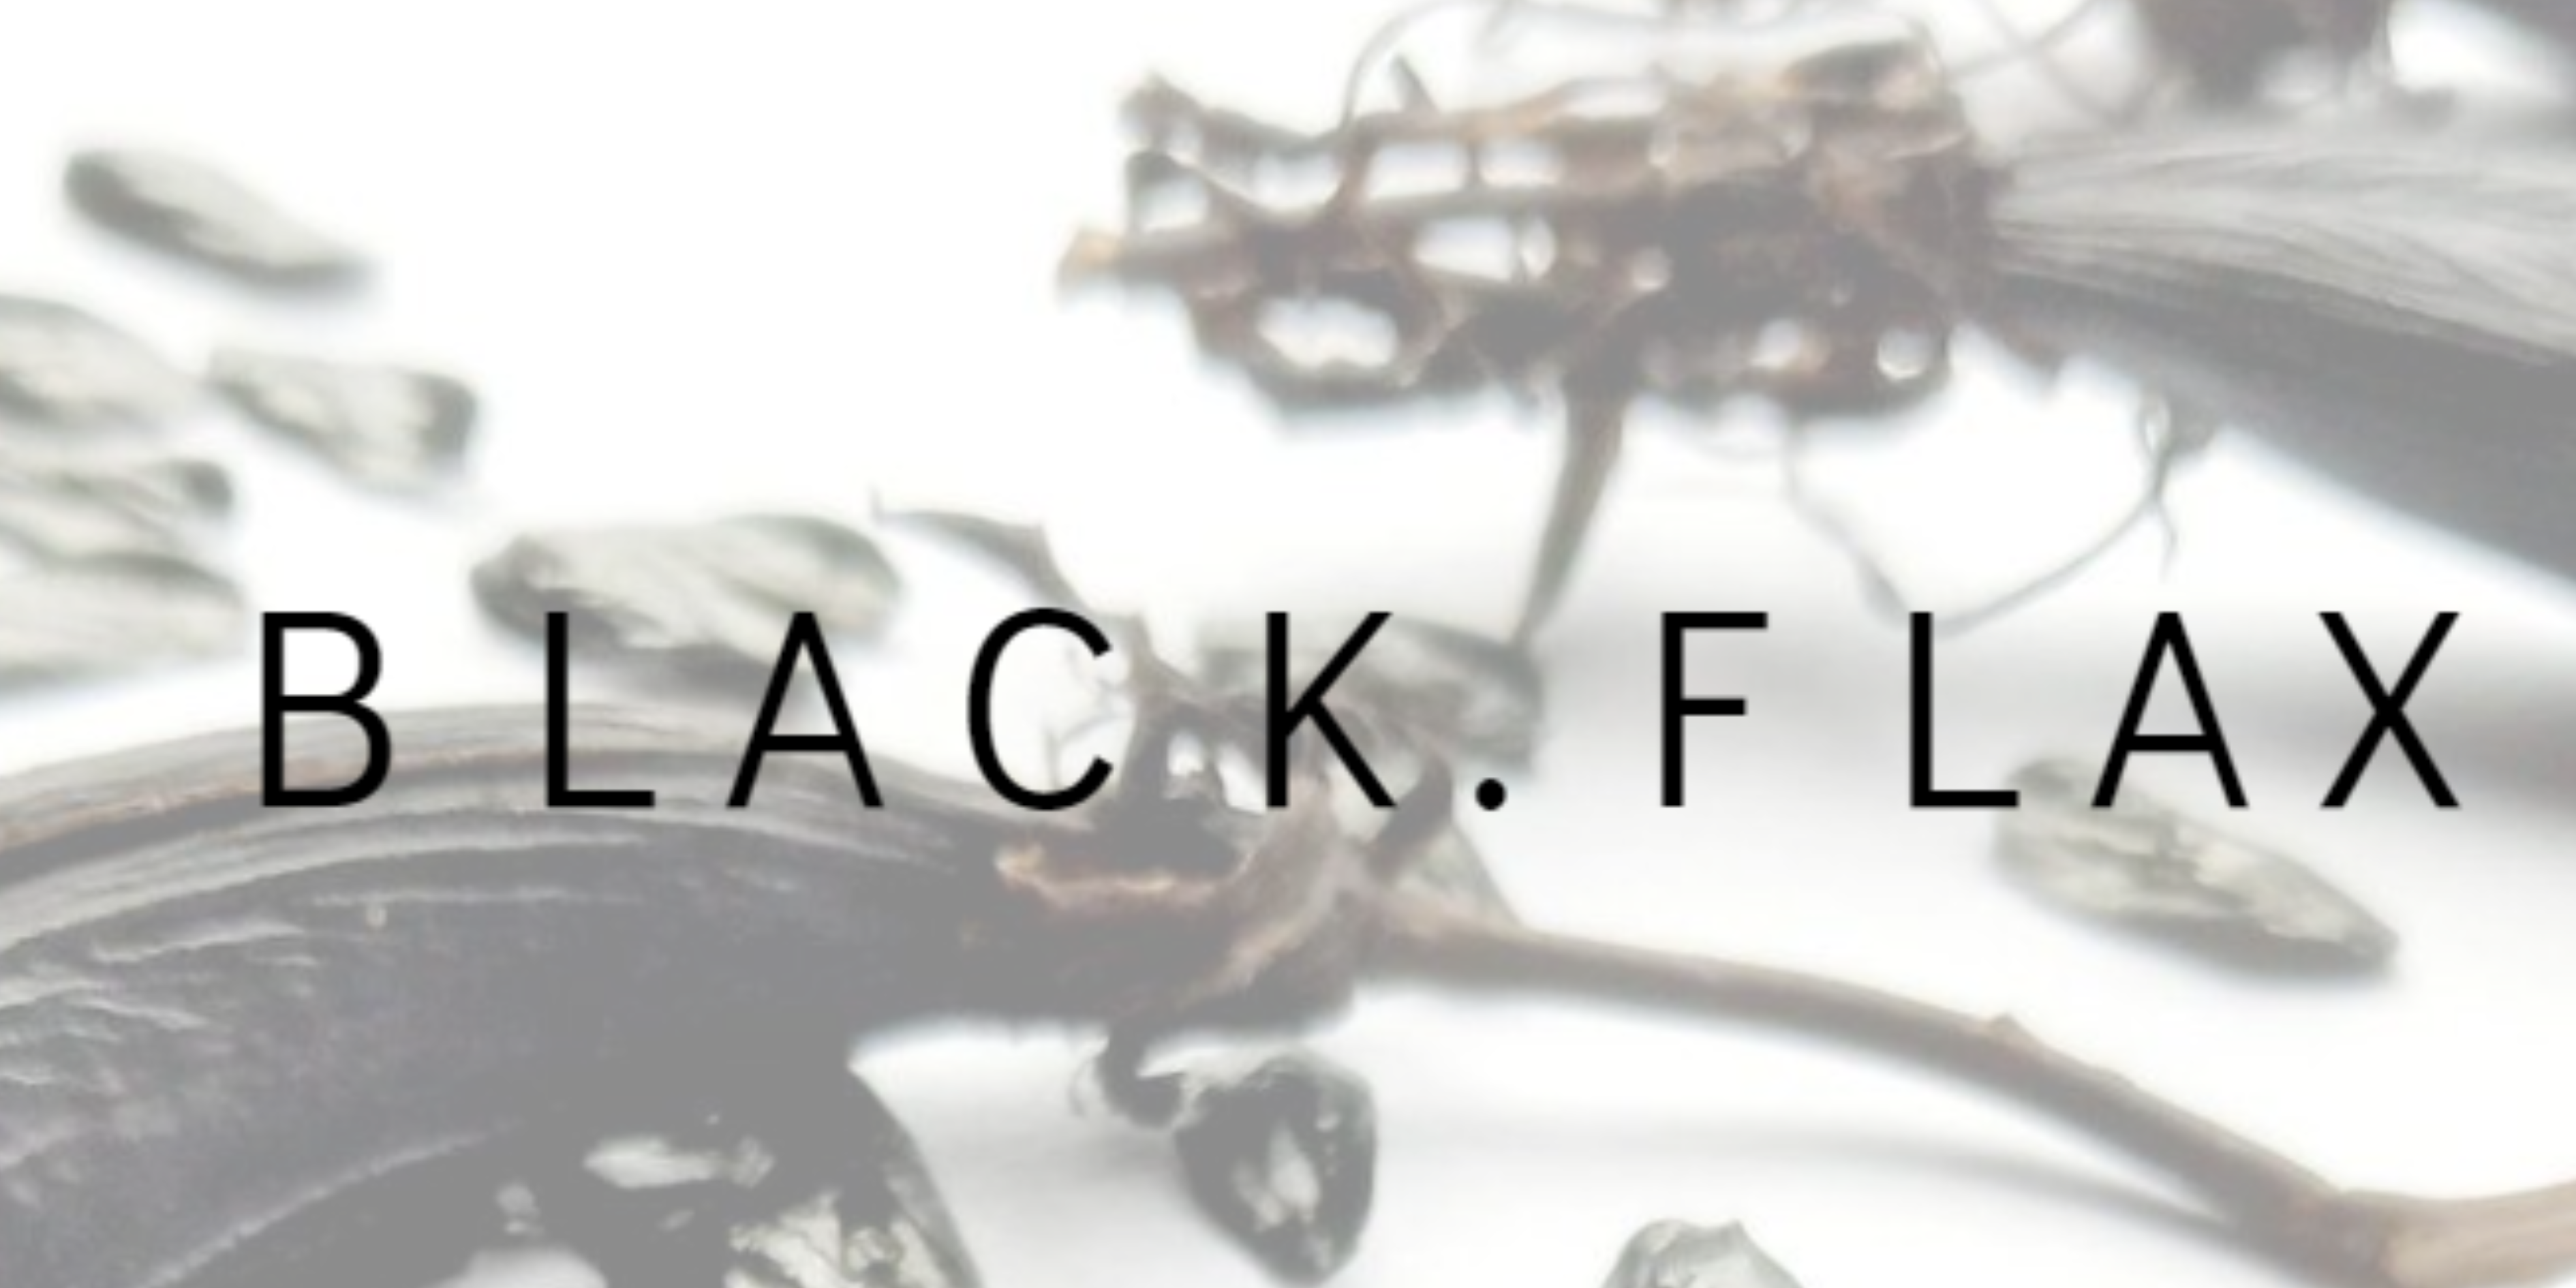 Black Flax Ltd